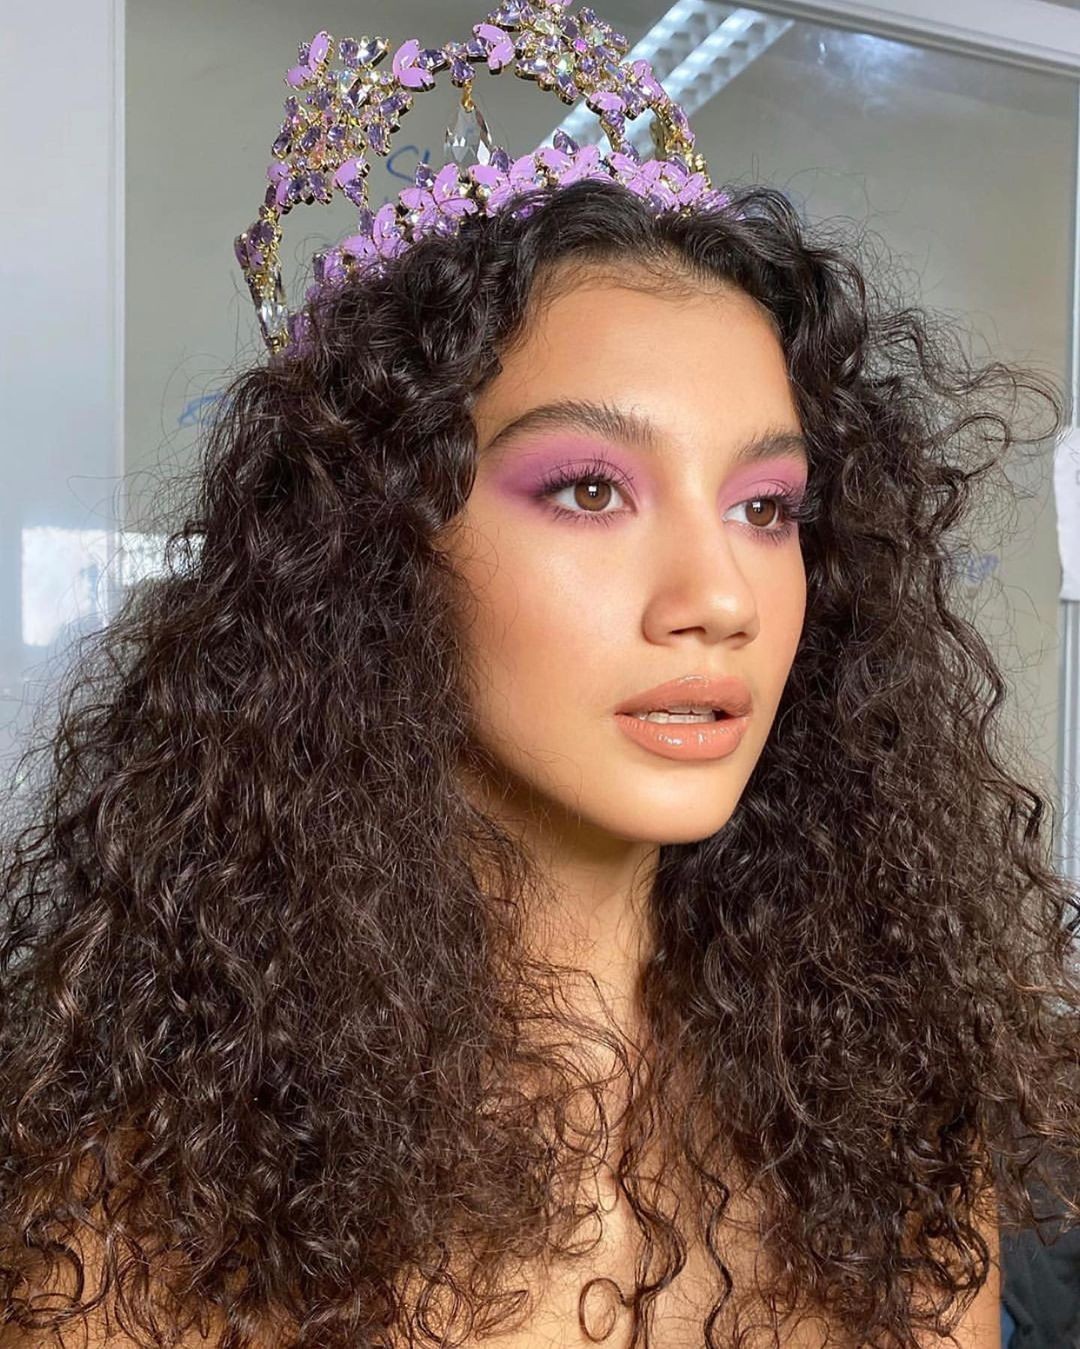 Nhan sắc người mẫu 19 tuổi đăng quang Hoa hậu Hòa bình Philippines - Ảnh 17.